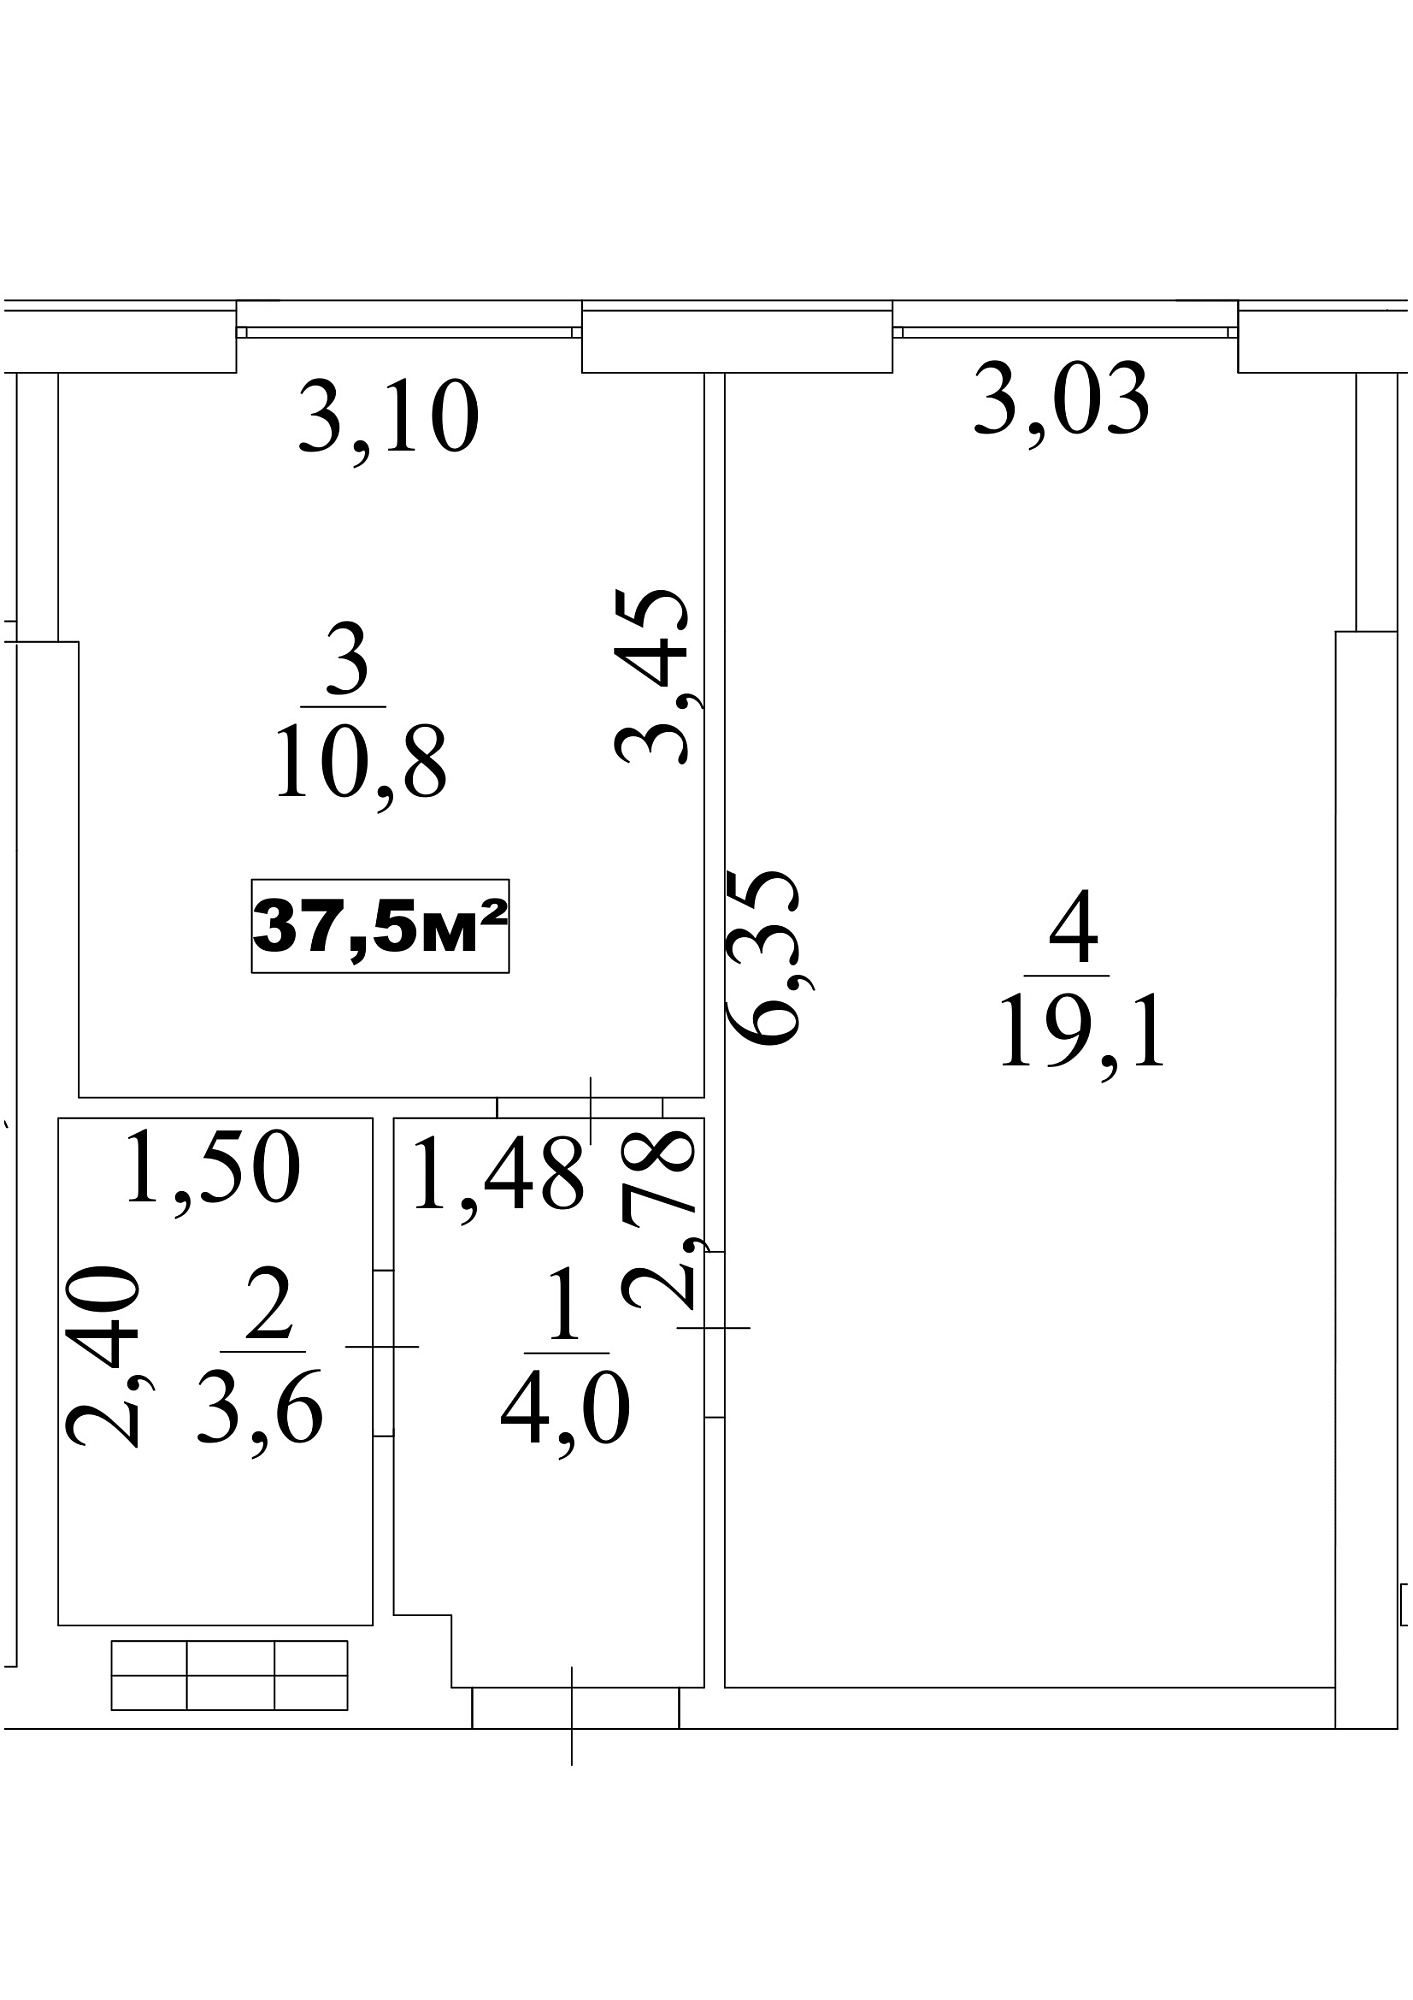 Планування 1-к квартира площею 37.5м2, AB-10-04/0034а.